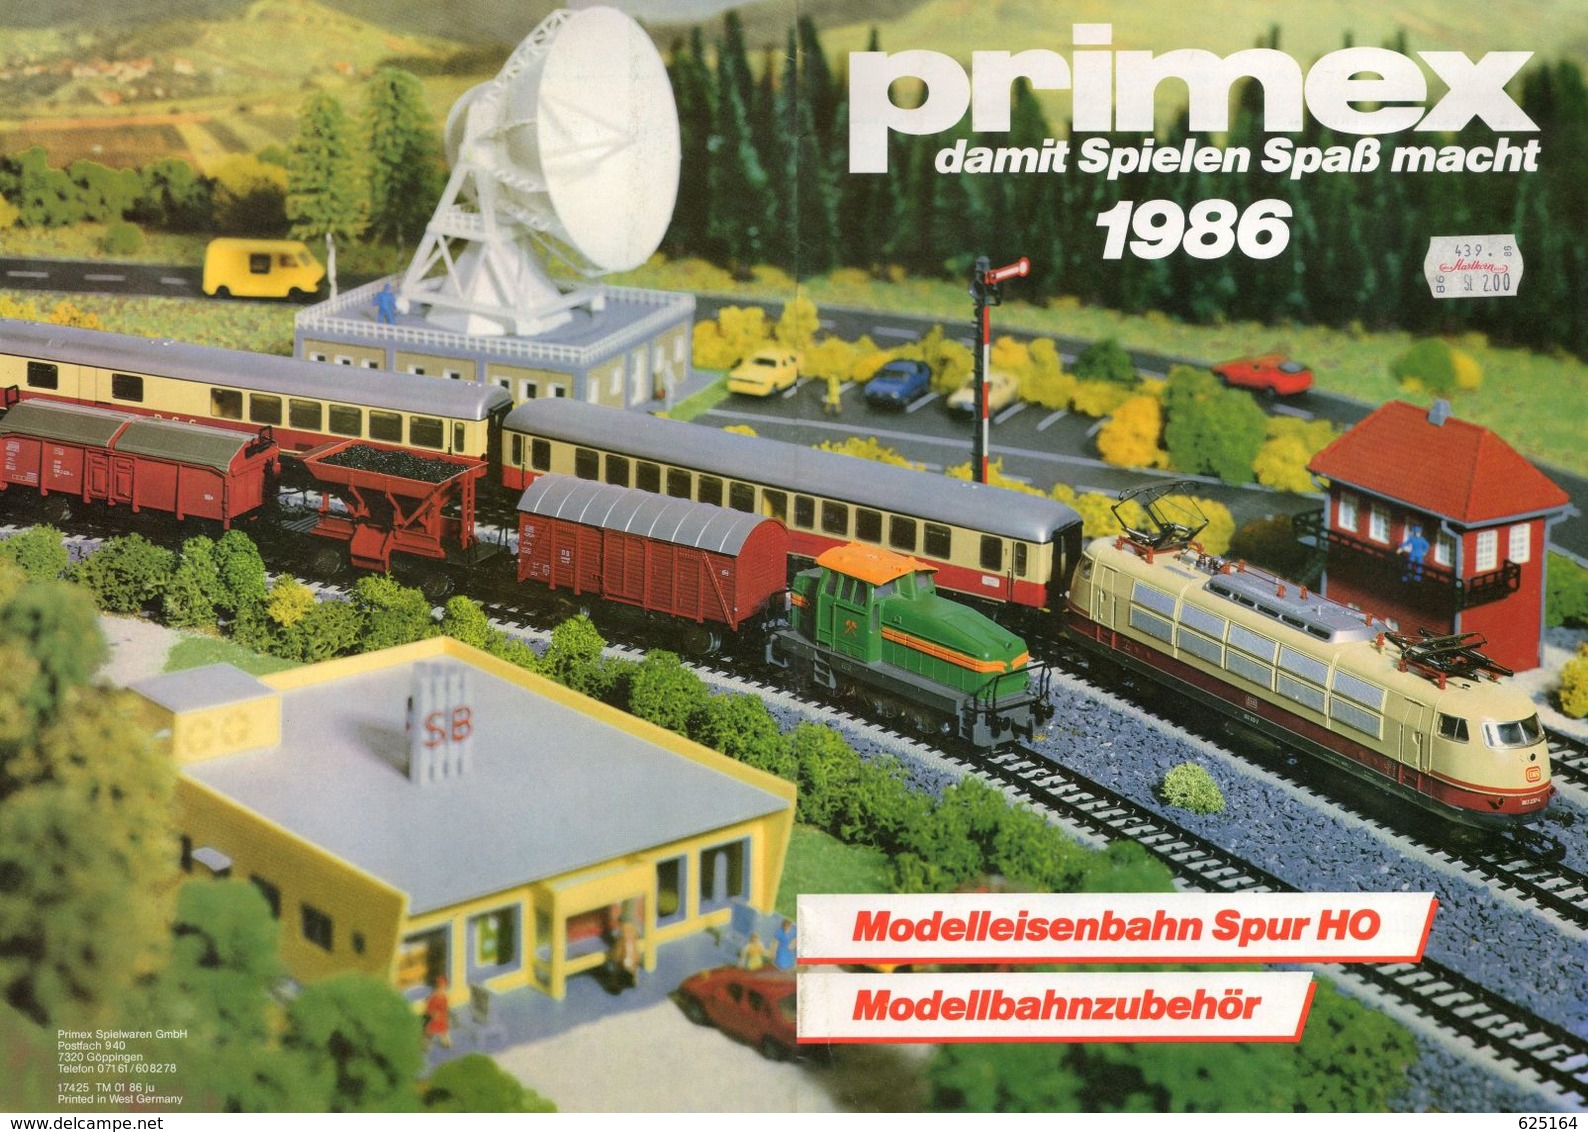 Catalogue PRIMEX 1986 Damt Spielen Spaß Macht Modellbahnzubehör Märklin HO - Deutsch